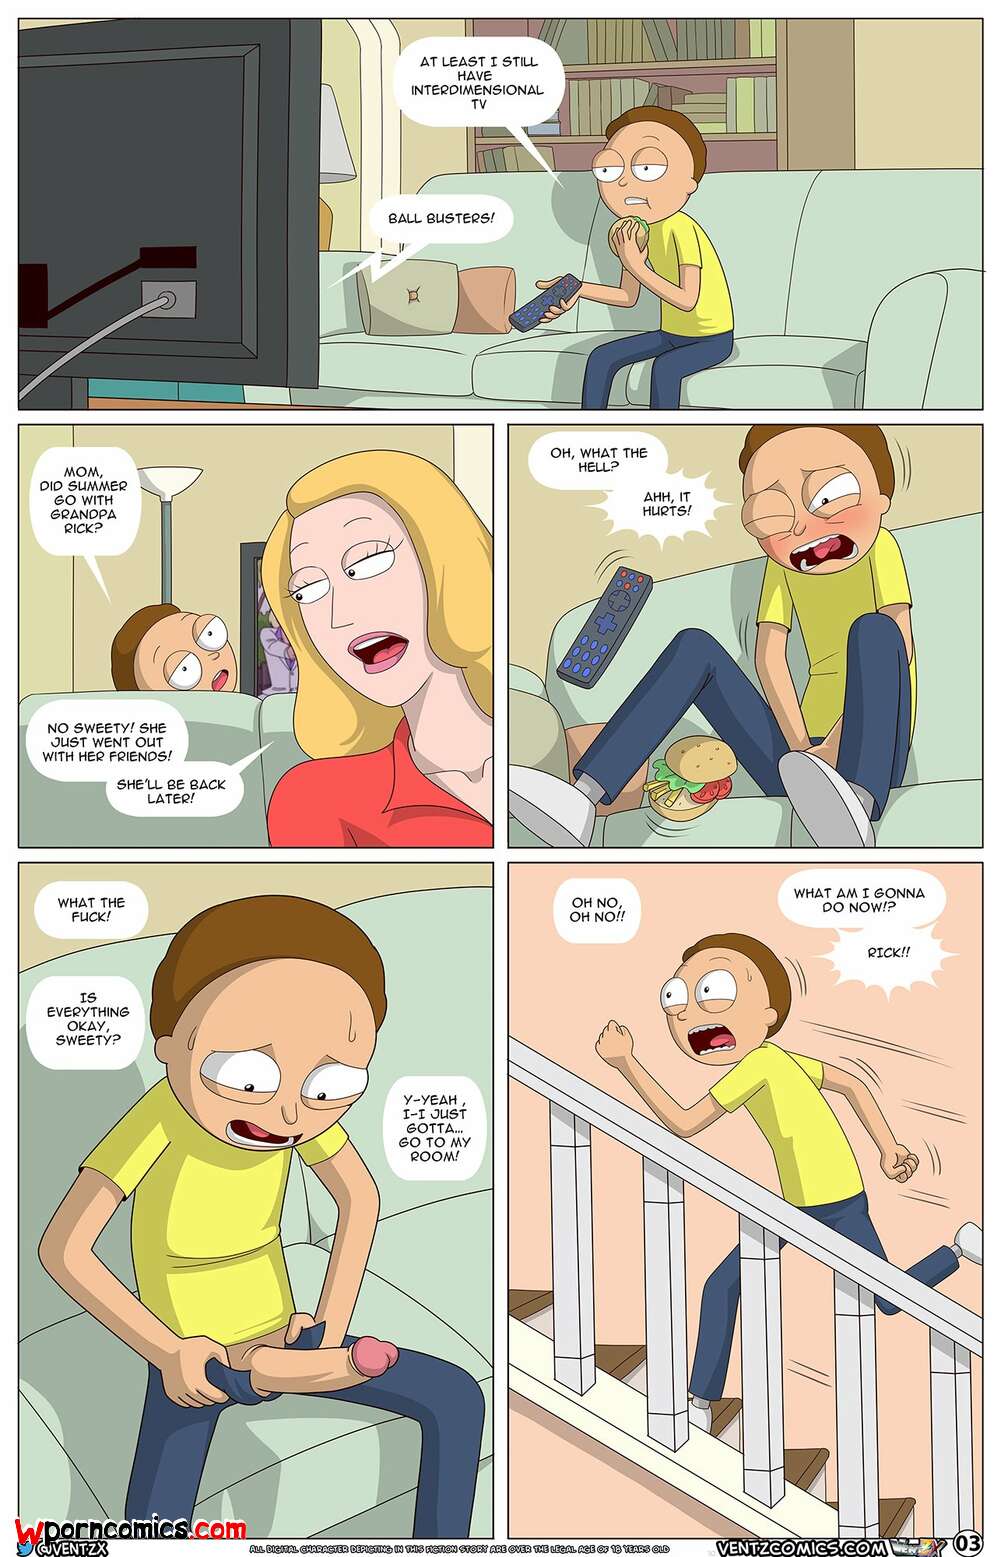 Rick and morty cartoon porn comics